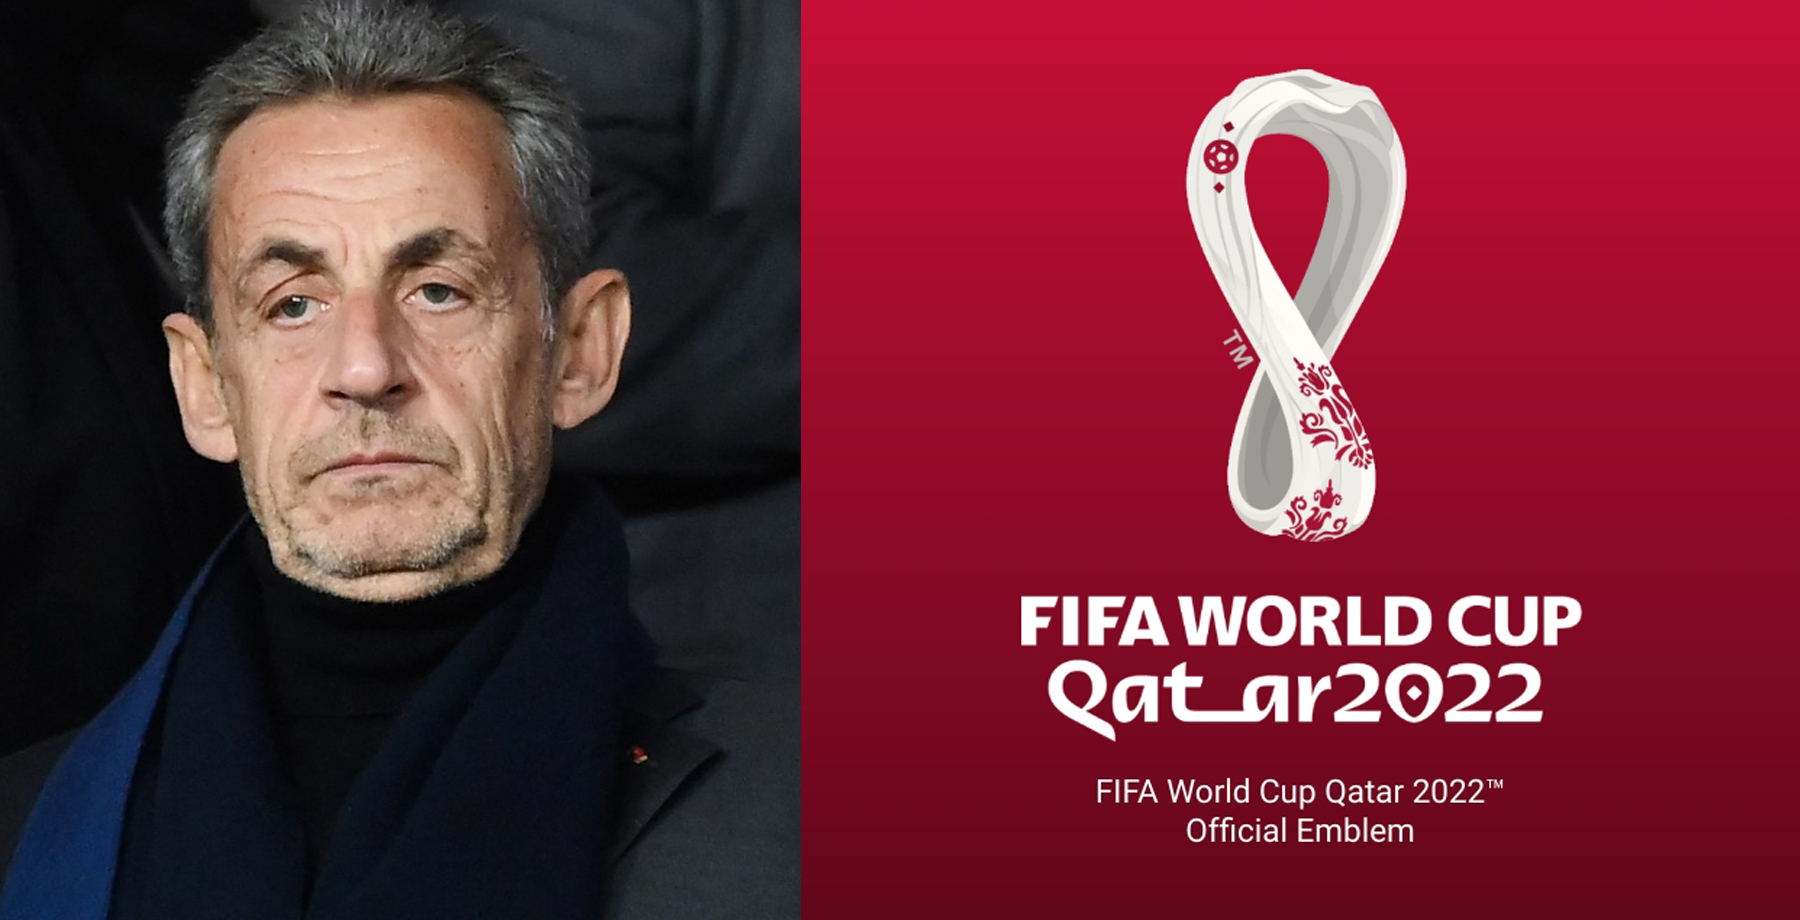 Sarkozy habría influido en la decisión de llevar el Mundial de 2022 a Qatar y no Estados Unidos. (Foto Prensa Libre: Hemeroteca)